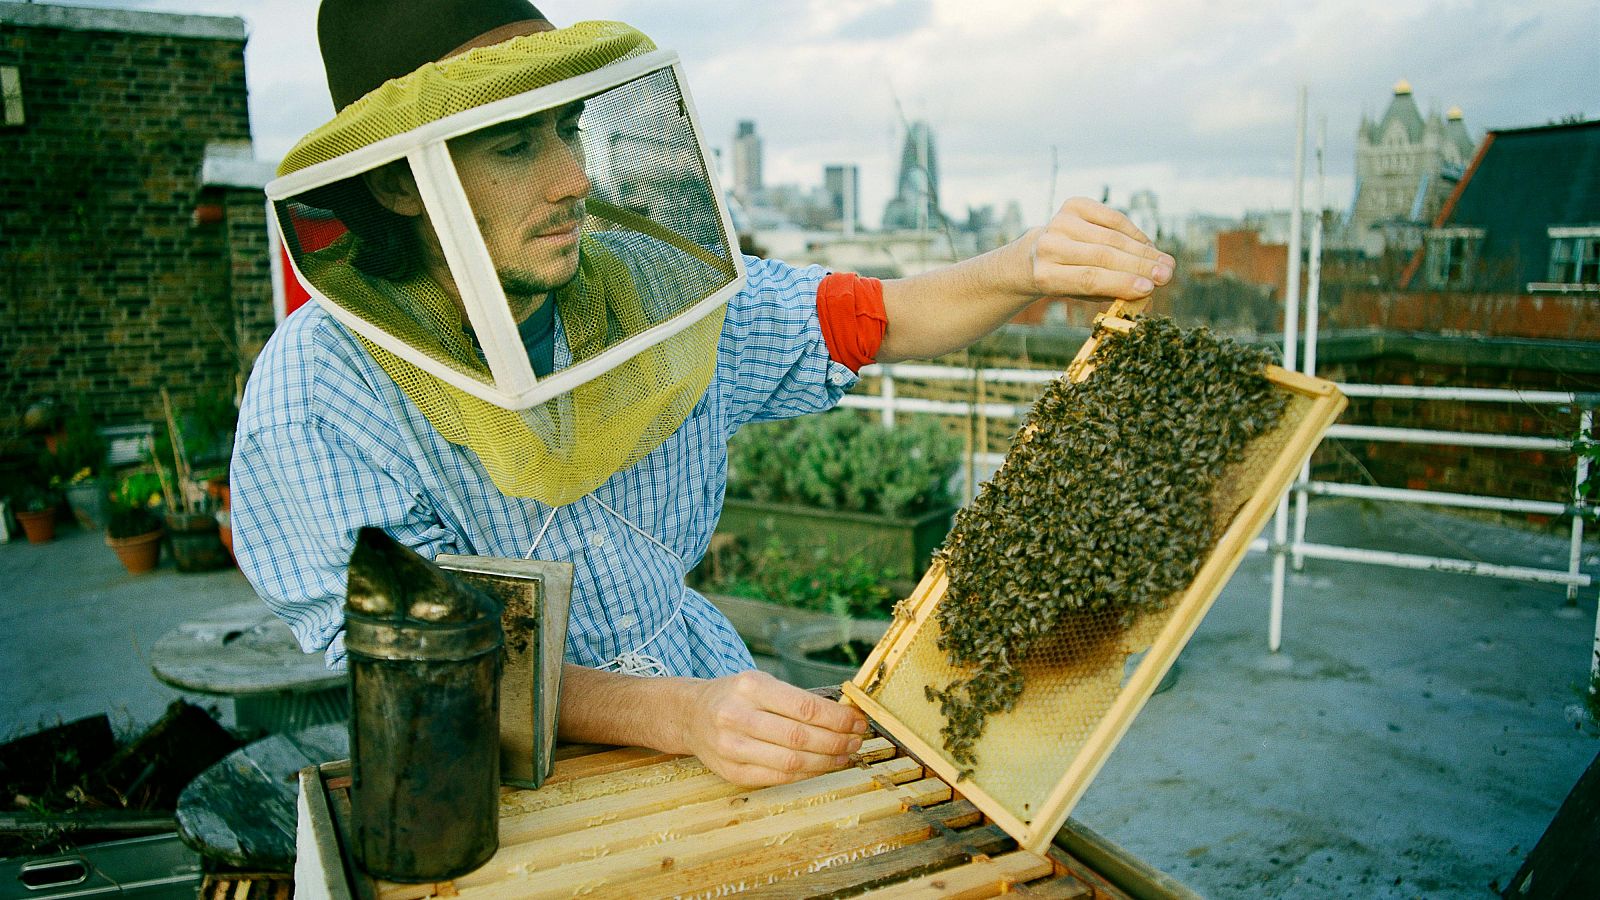 Día mundial de las abejas.